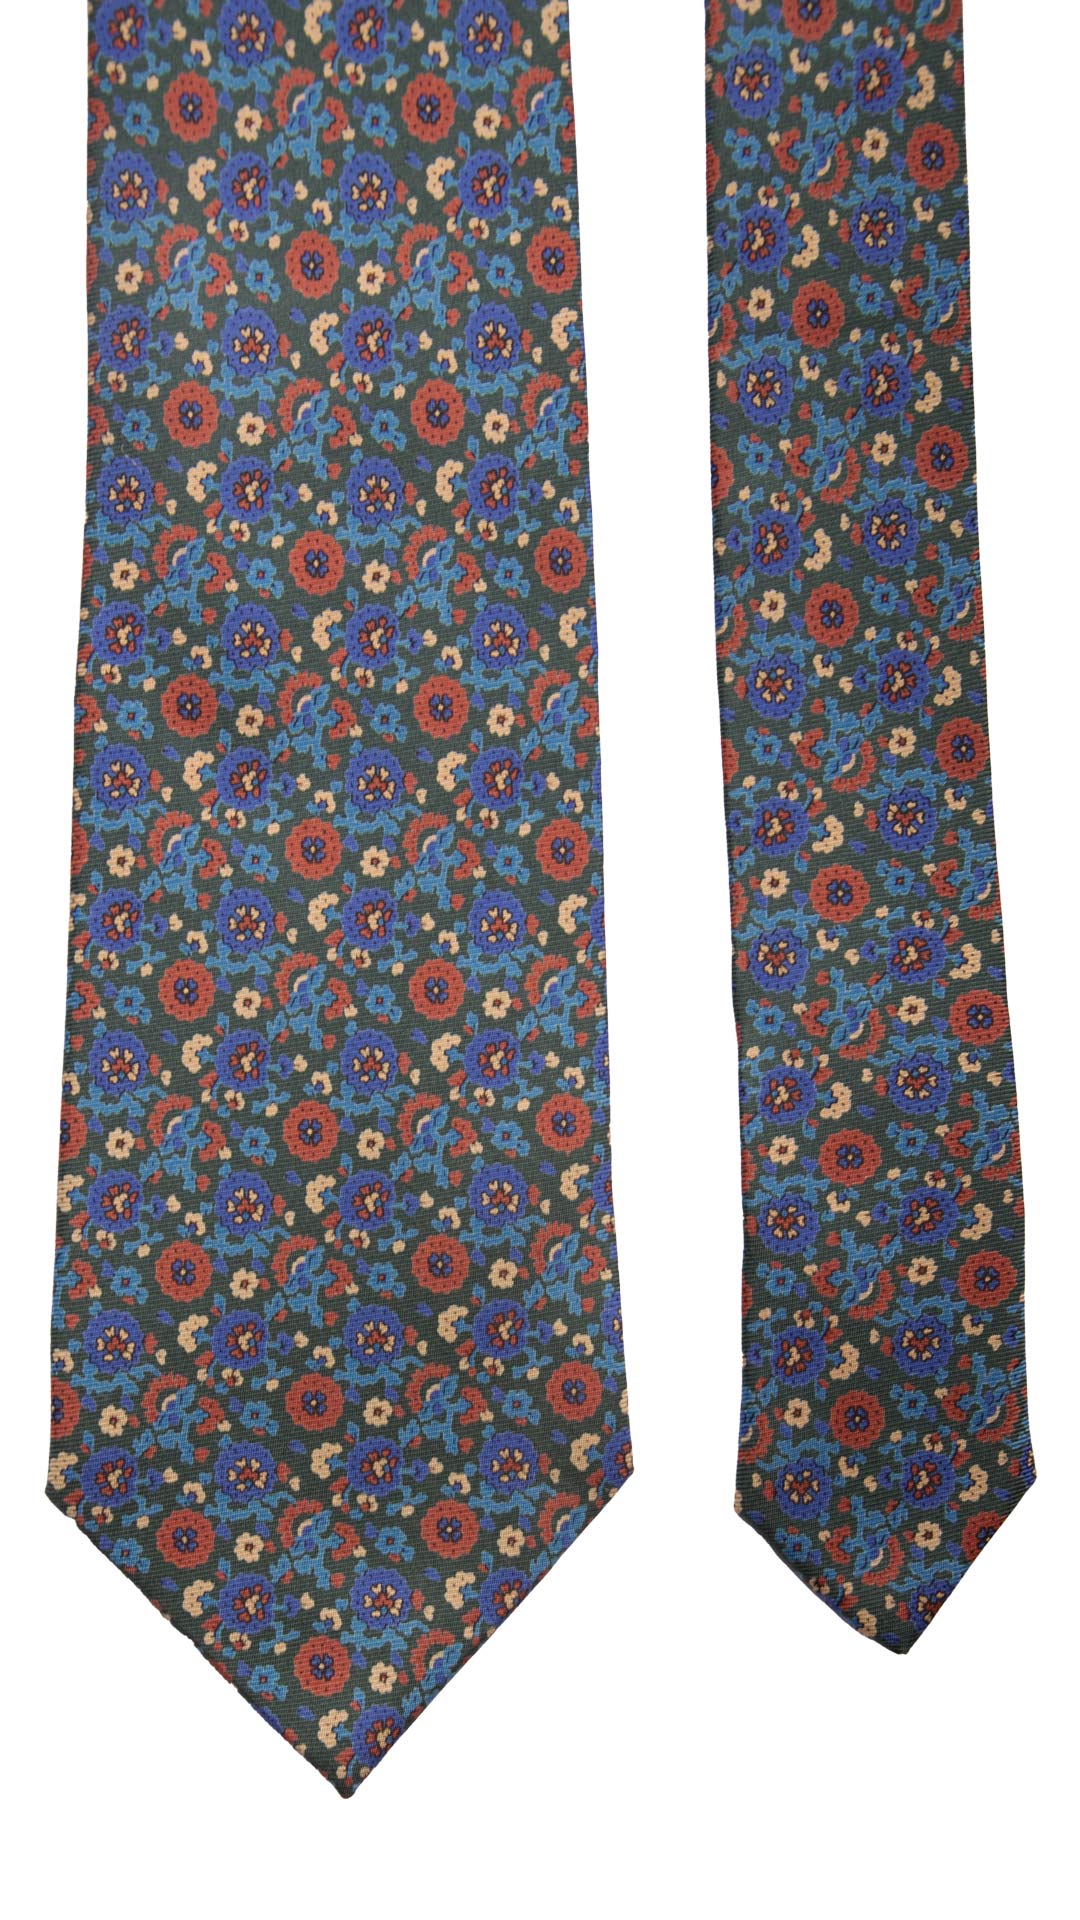 Cravatta Vintage in Twill di Seta Verde A Fiori Blu Celesti Rossi CV766 Pala